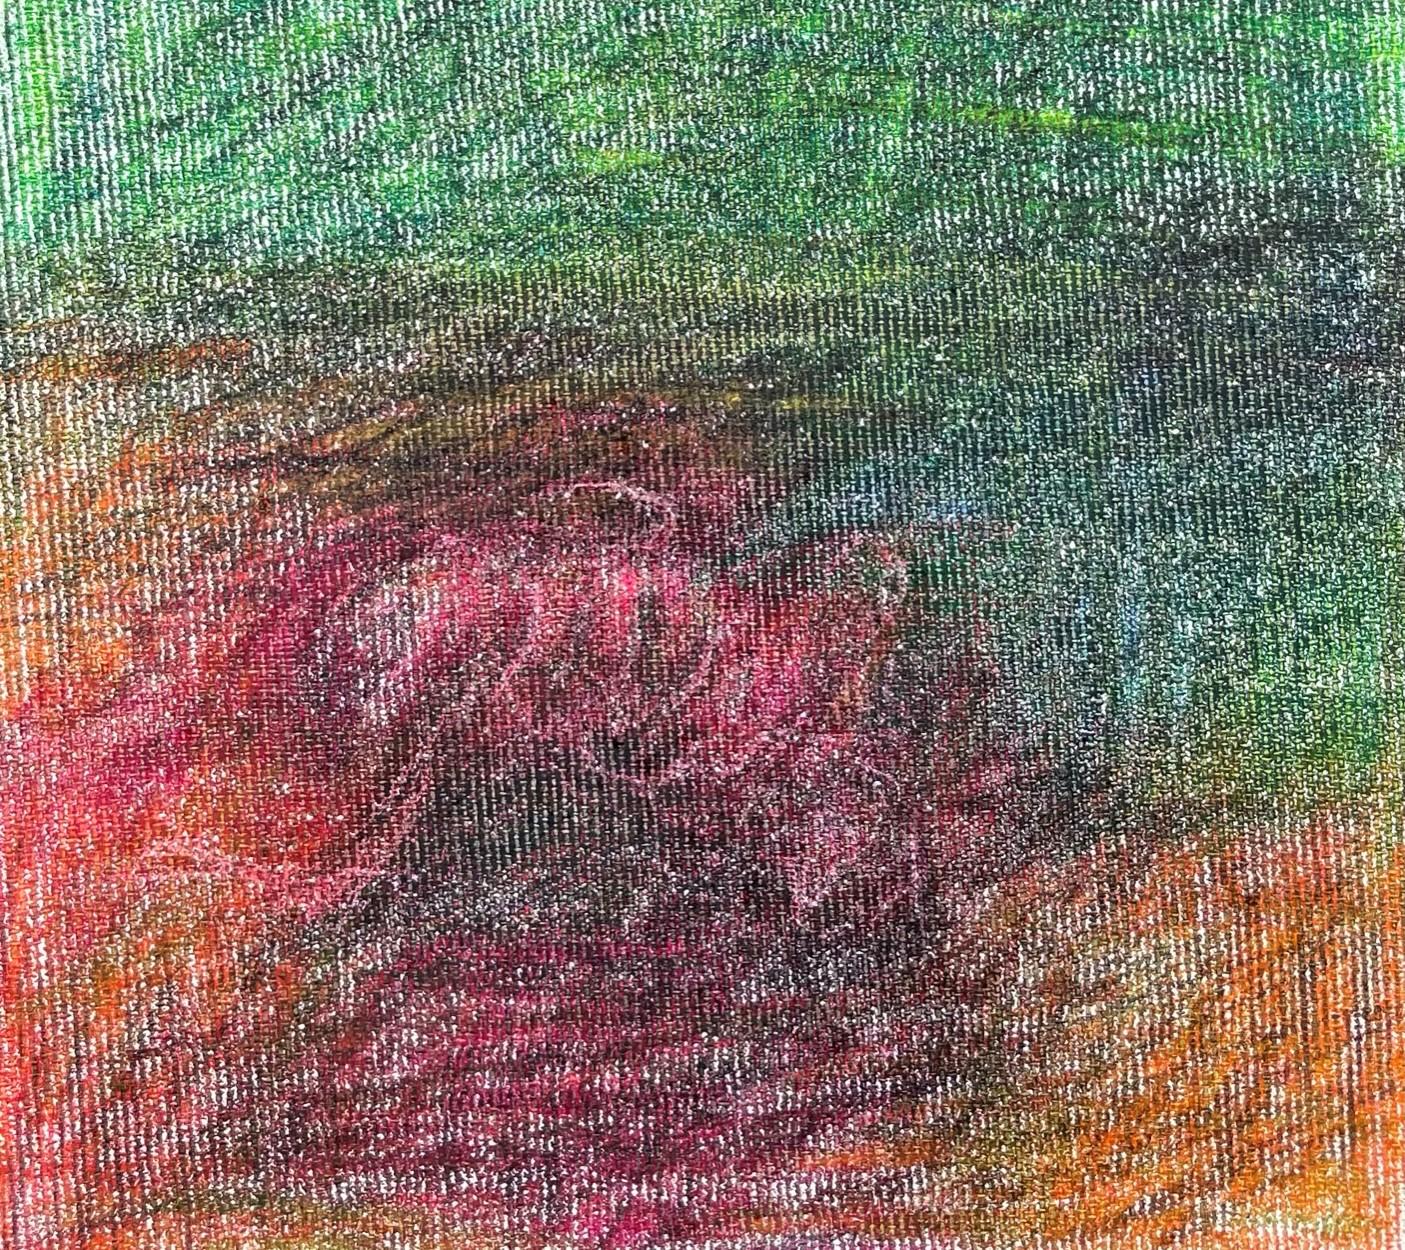 Body in the Field n°4 - Vert, rouge, dessin, crayon de couleur - Expressionniste Art par Zsolt Berszán